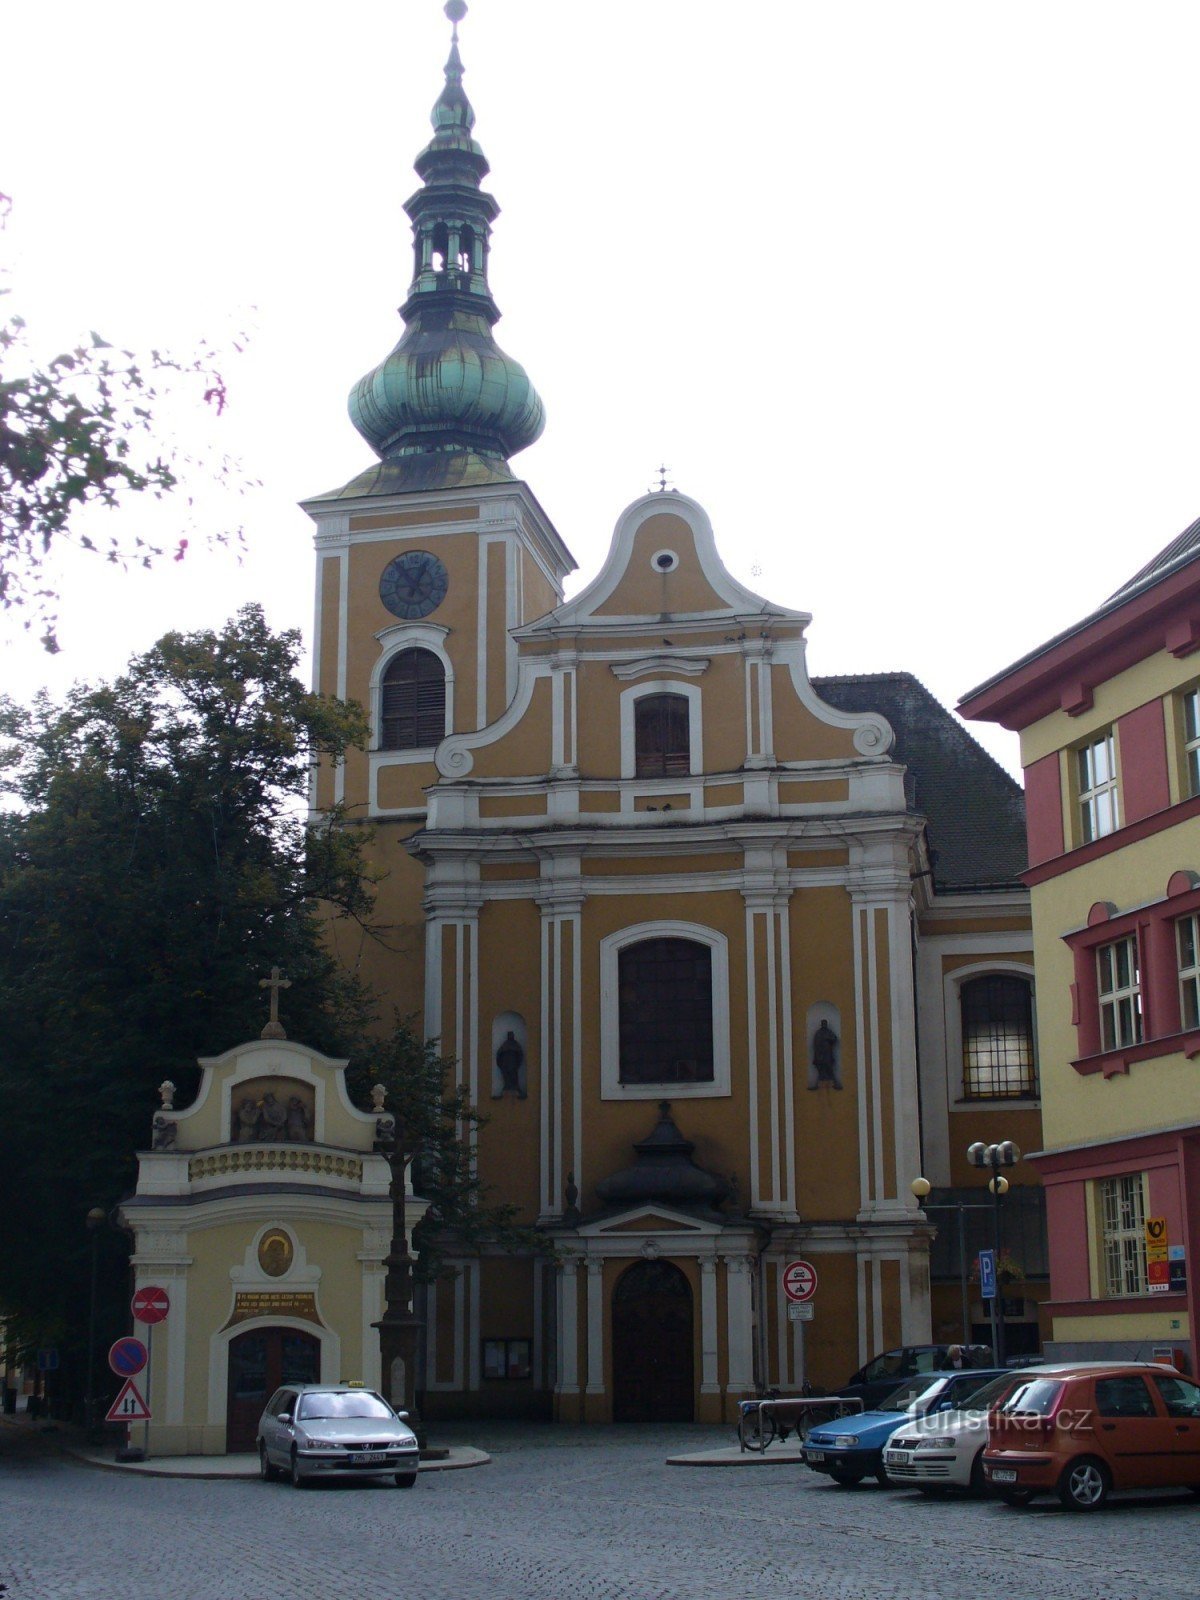 Biserica din piata